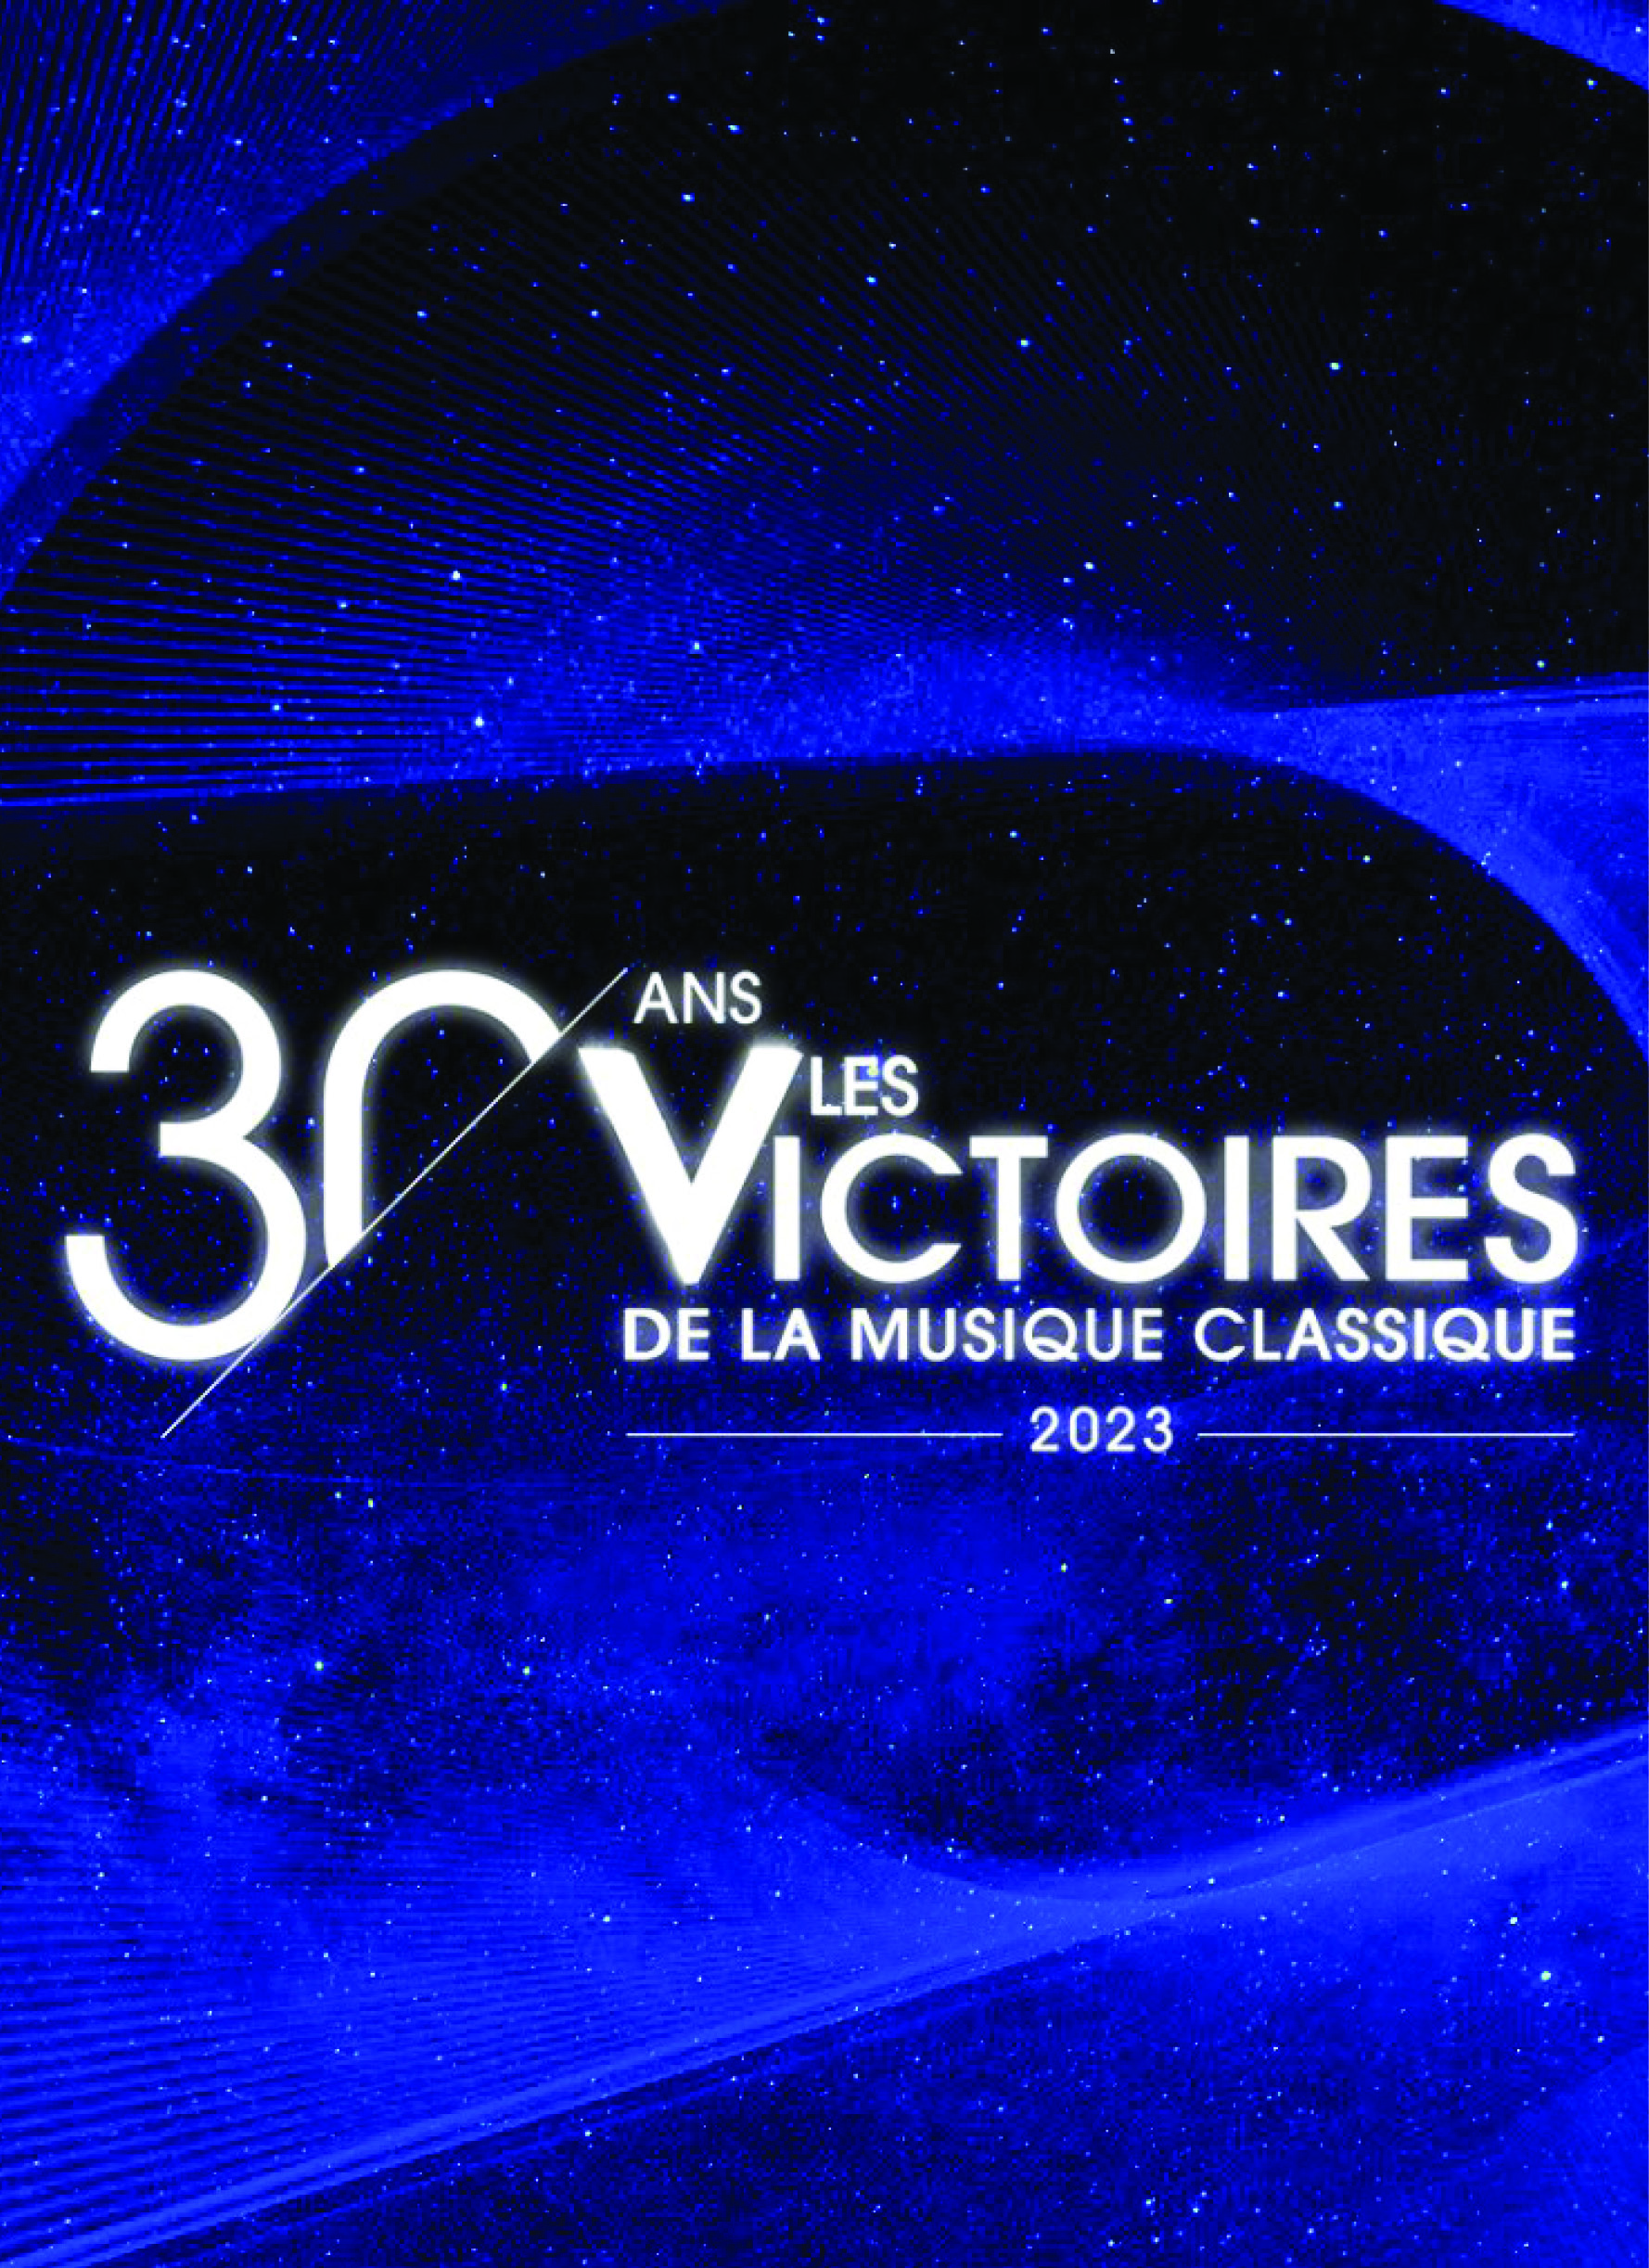 Les Victoires de la musique classique © Les Victoires de la musique